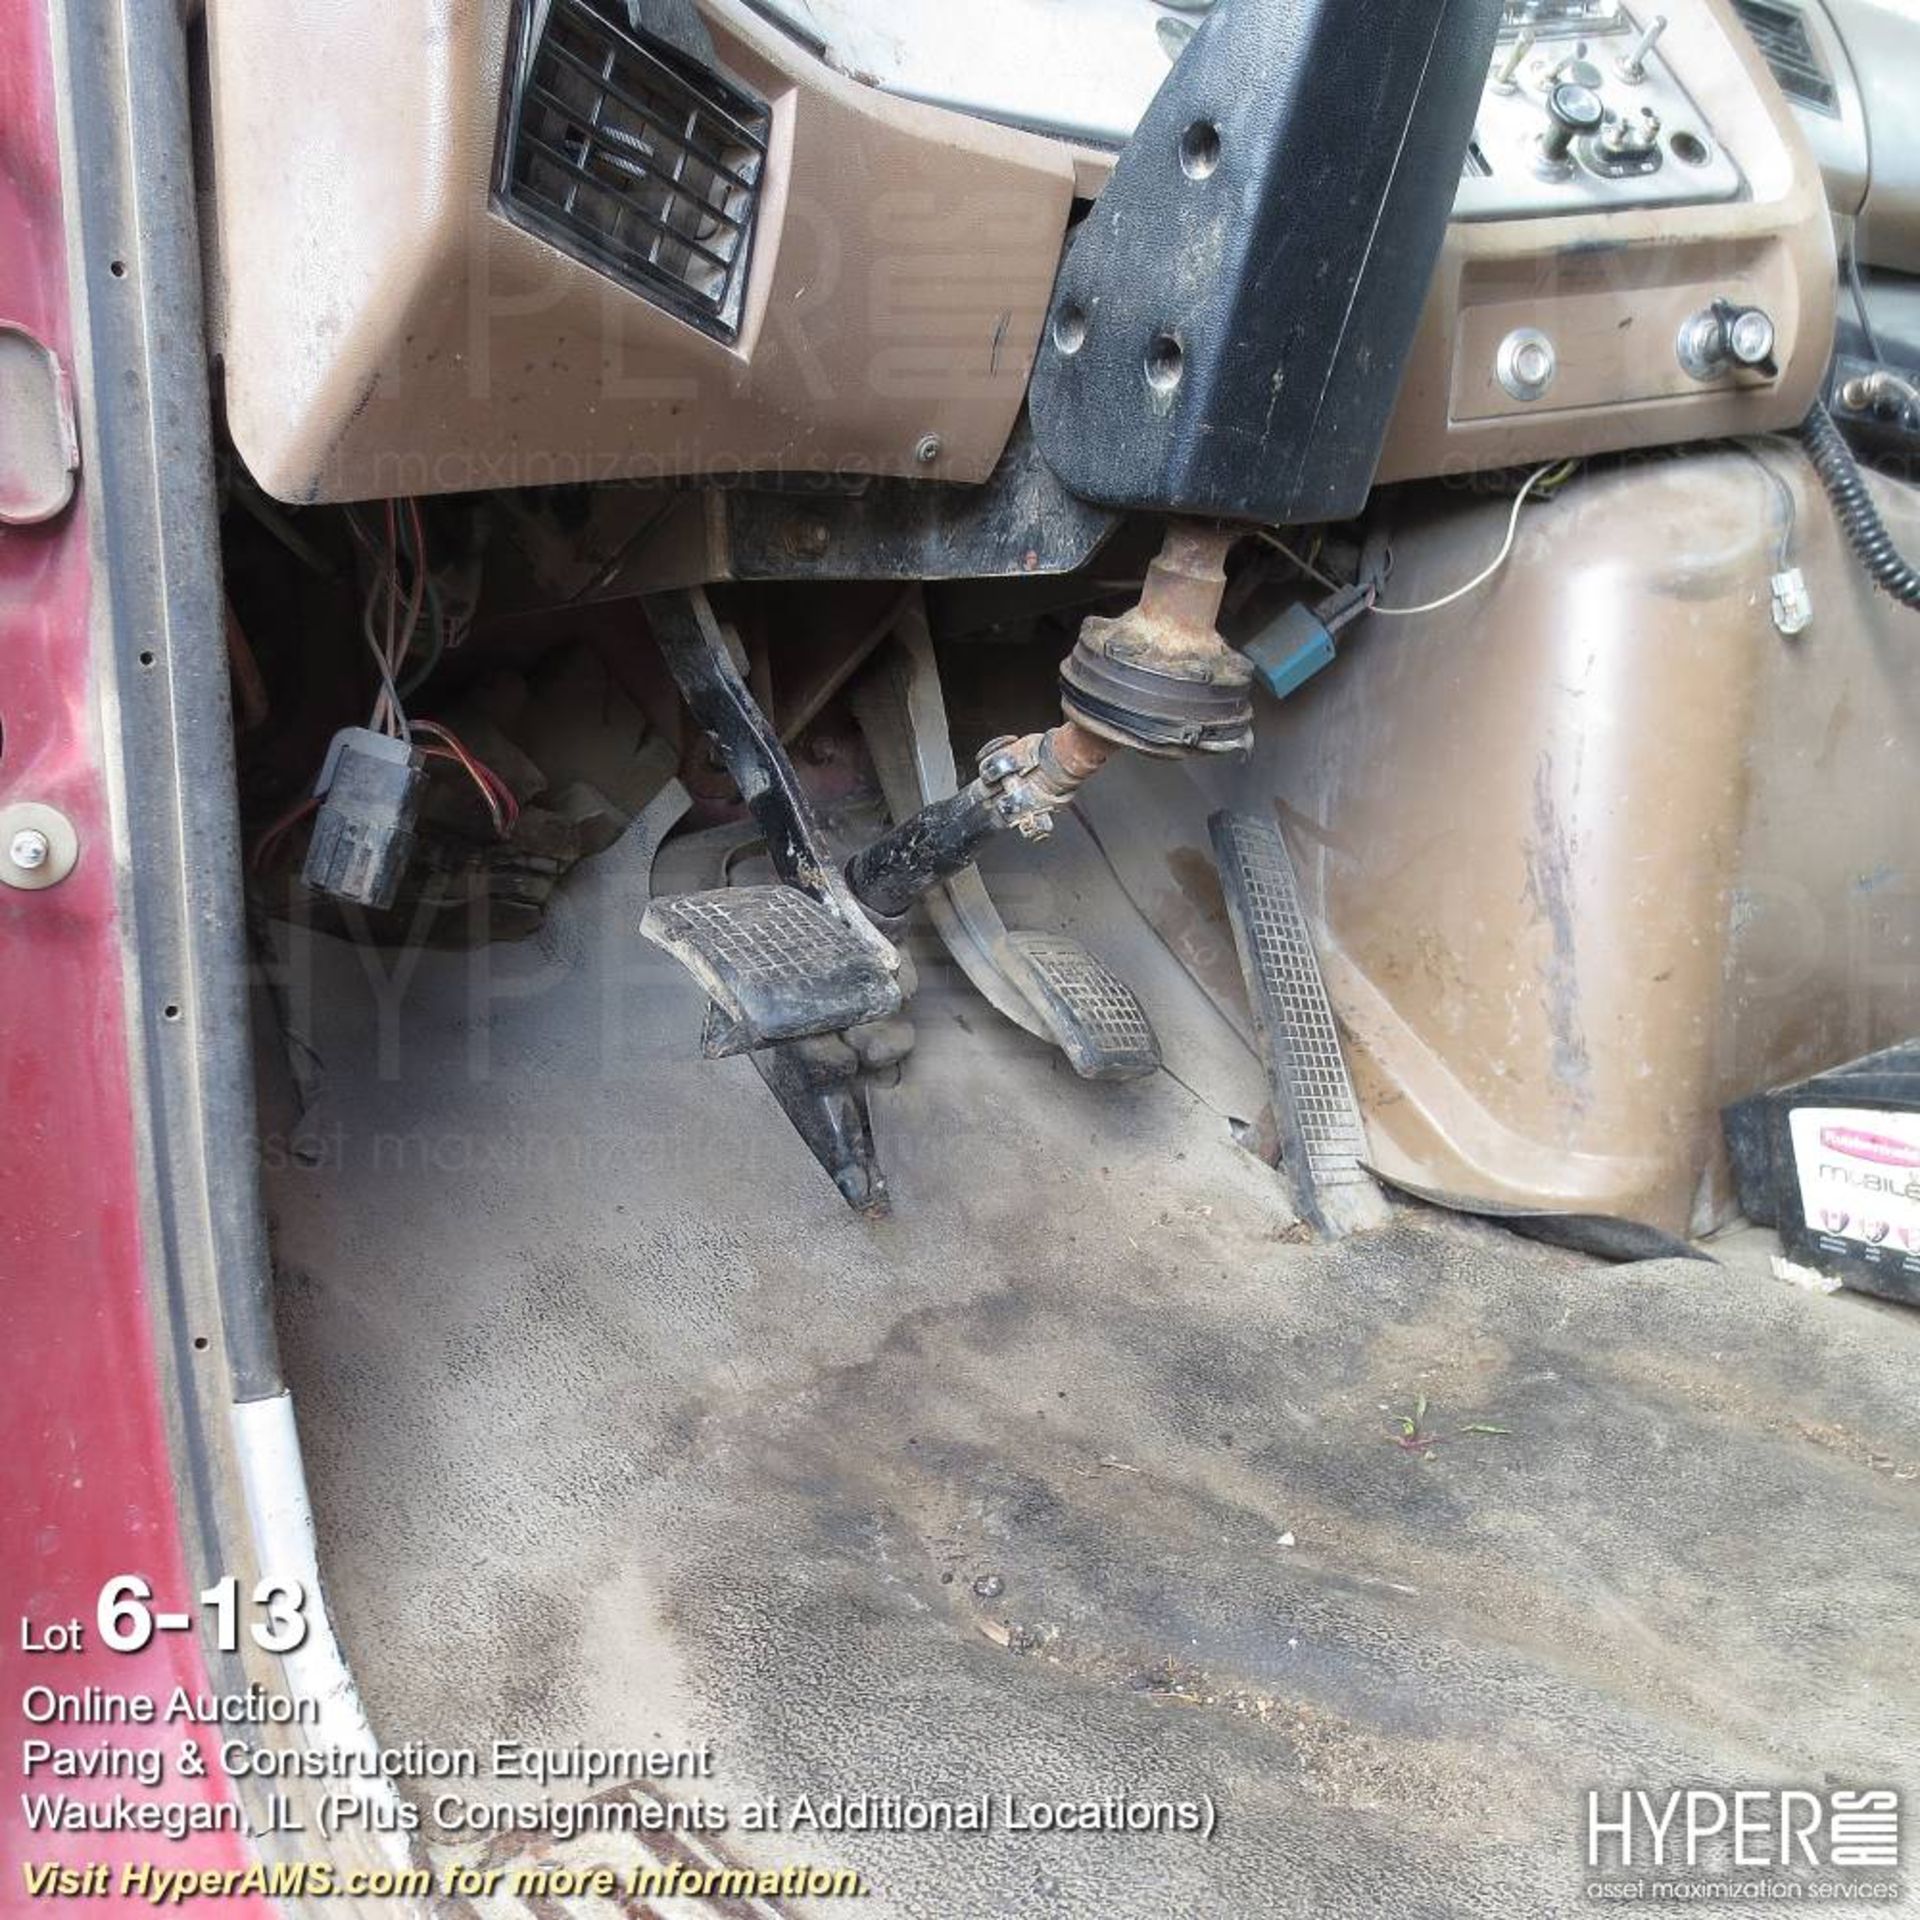 1997 Ford LT9000 dump truck - Image 13 of 24